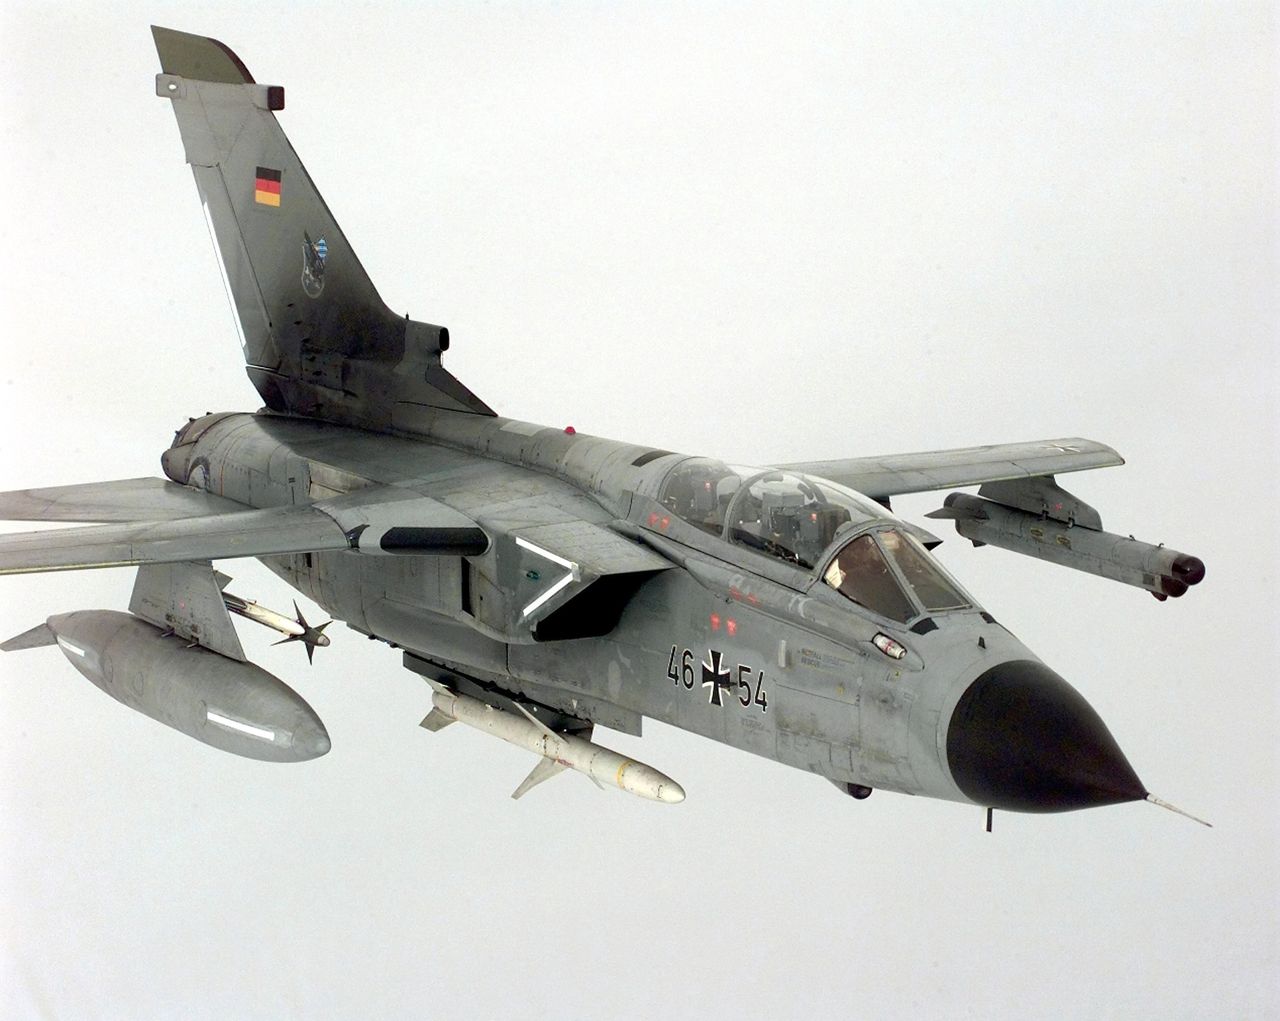 Samolot Panavia Tornado ECR w niemieckich barwach. Samolot przenosi widoczny pod kadłubem pocisk antyradiolokacyjny HARM